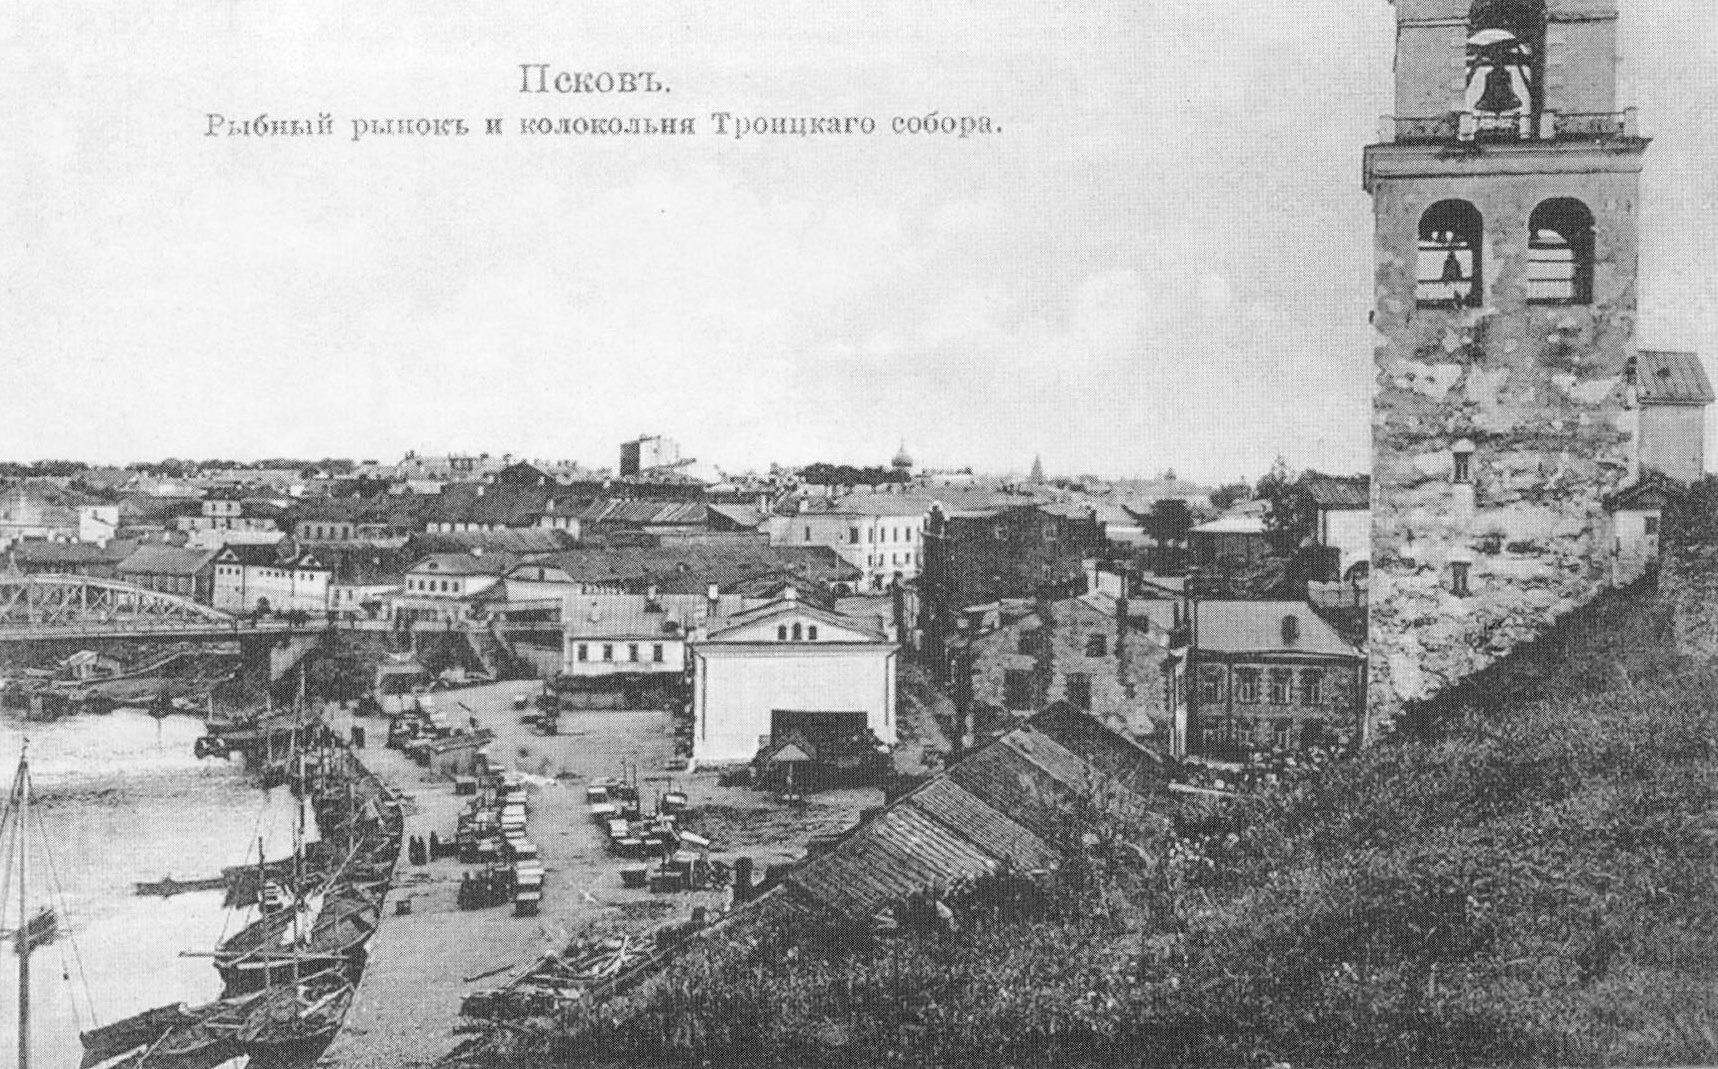 Псков. Рыбный рынок и колокольня Троицкого собора.